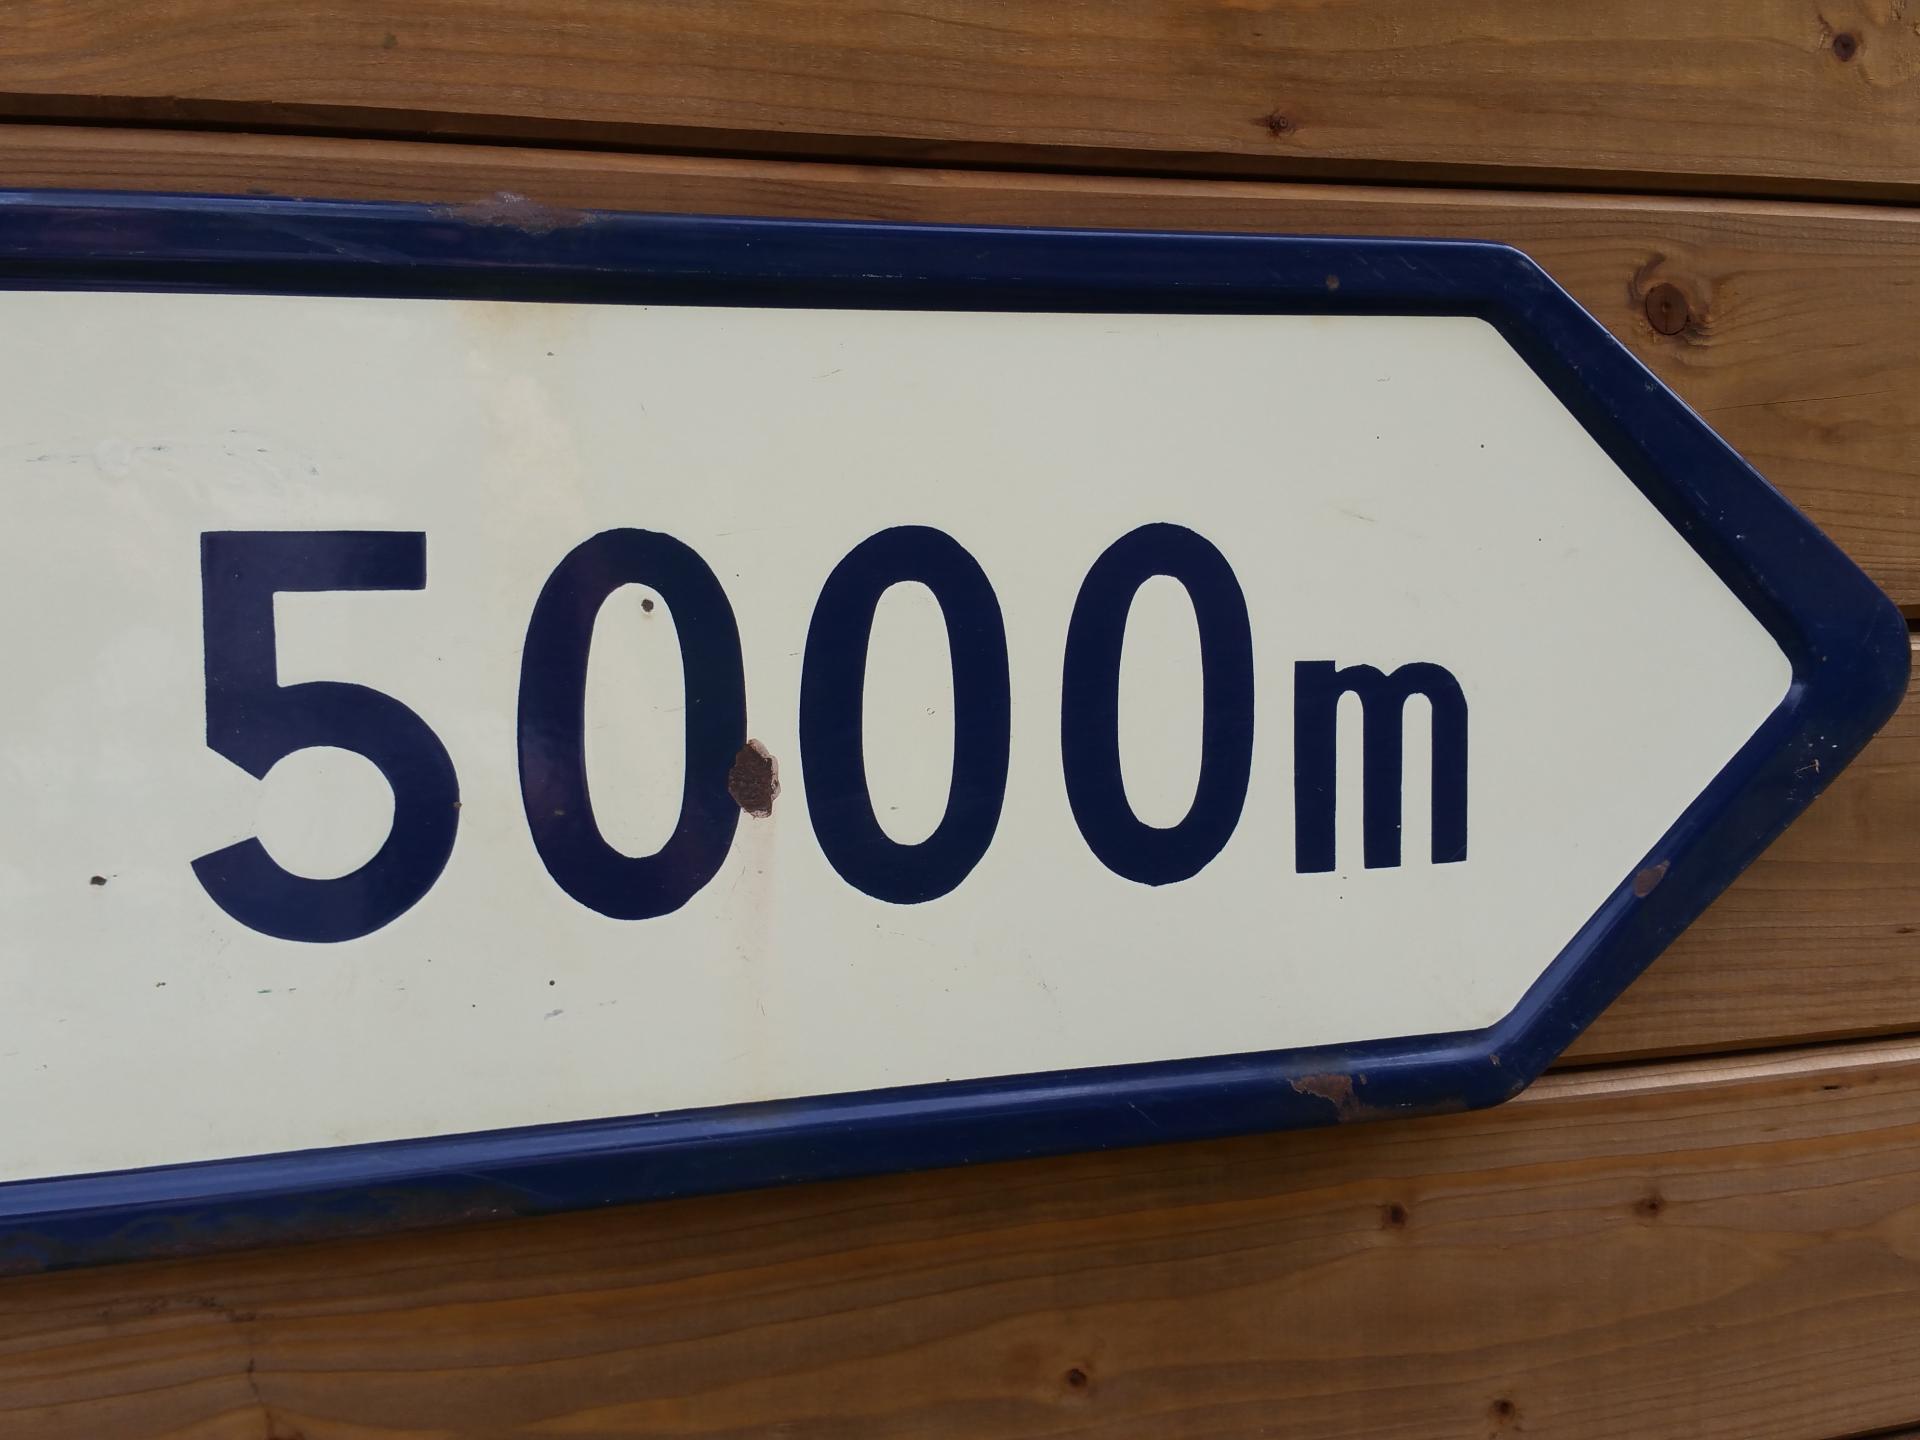 4 plaque camping 5000m